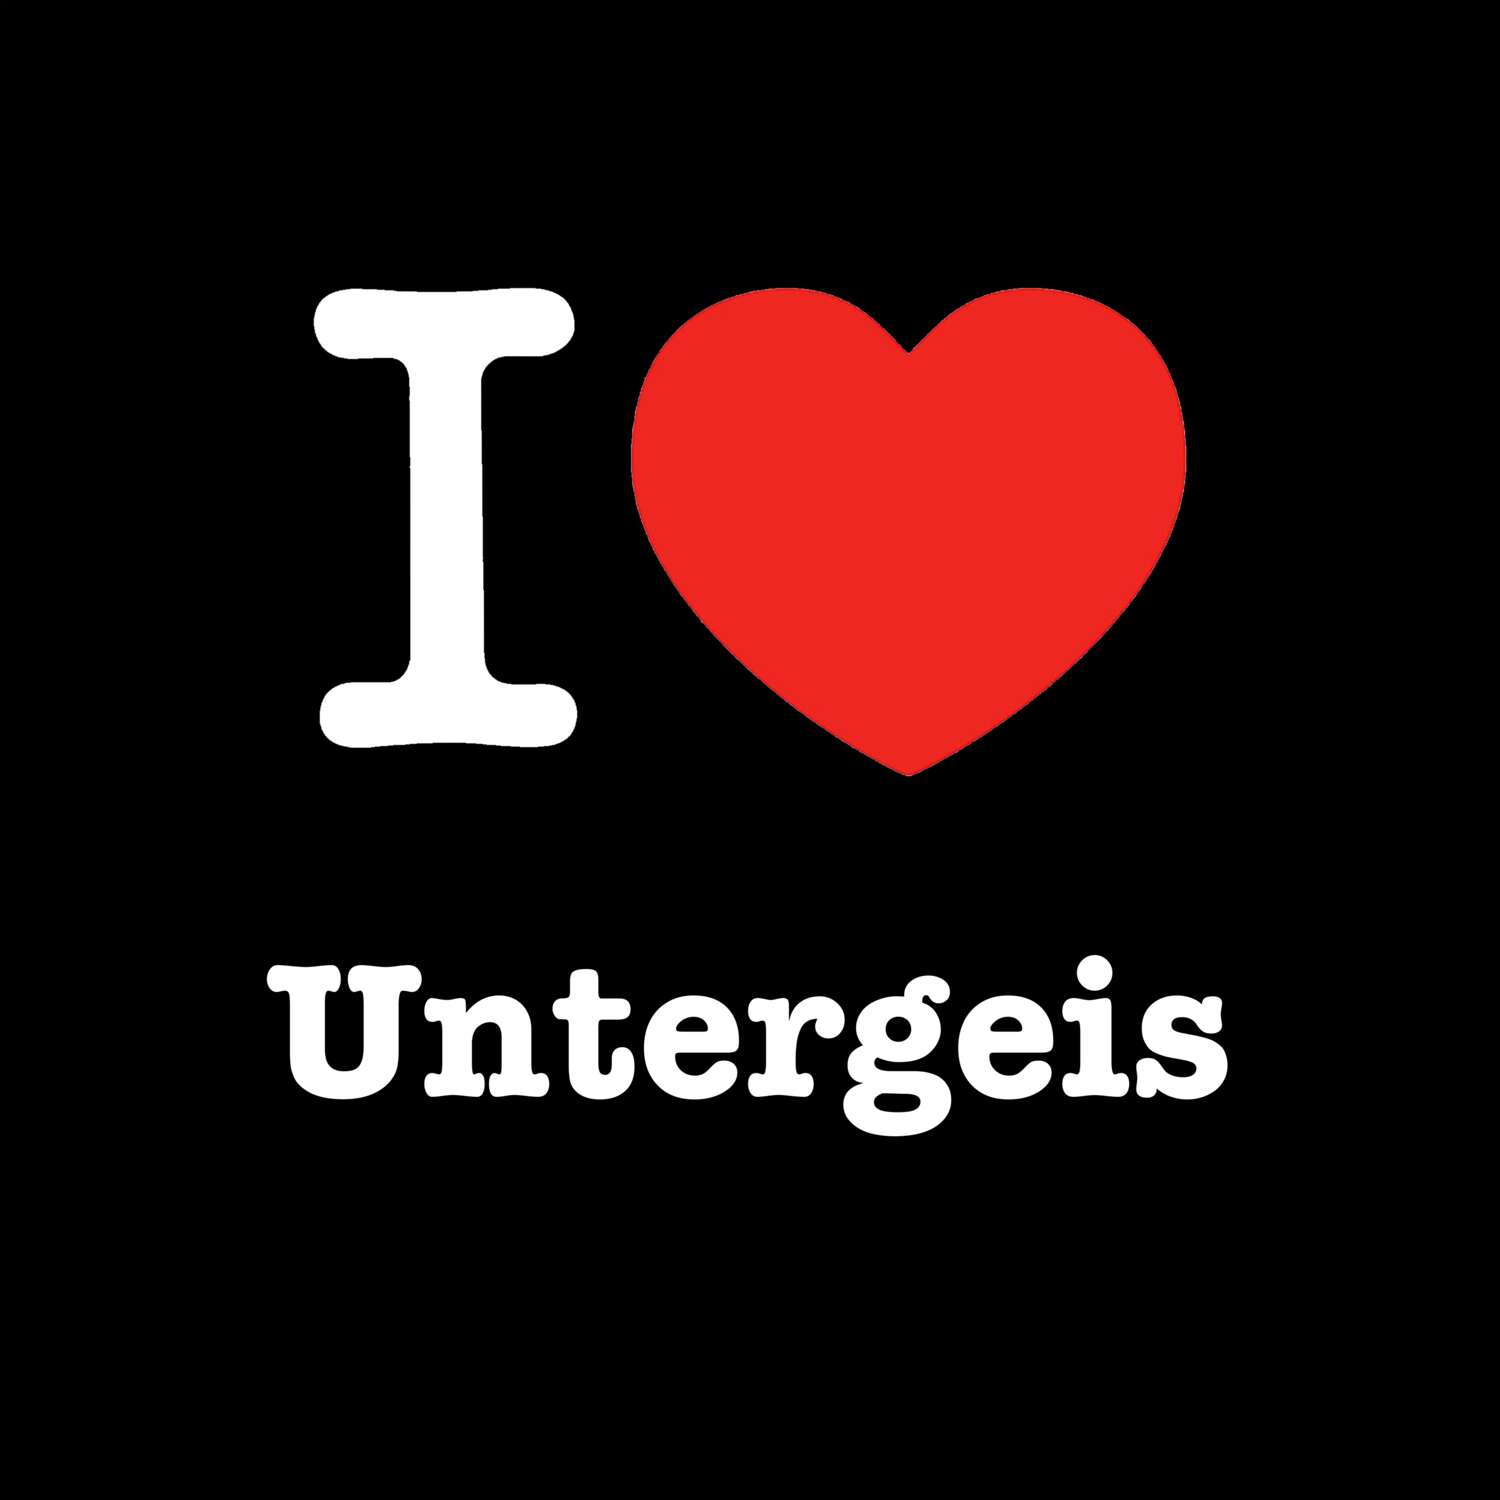 Untergeis T-Shirt »I love«